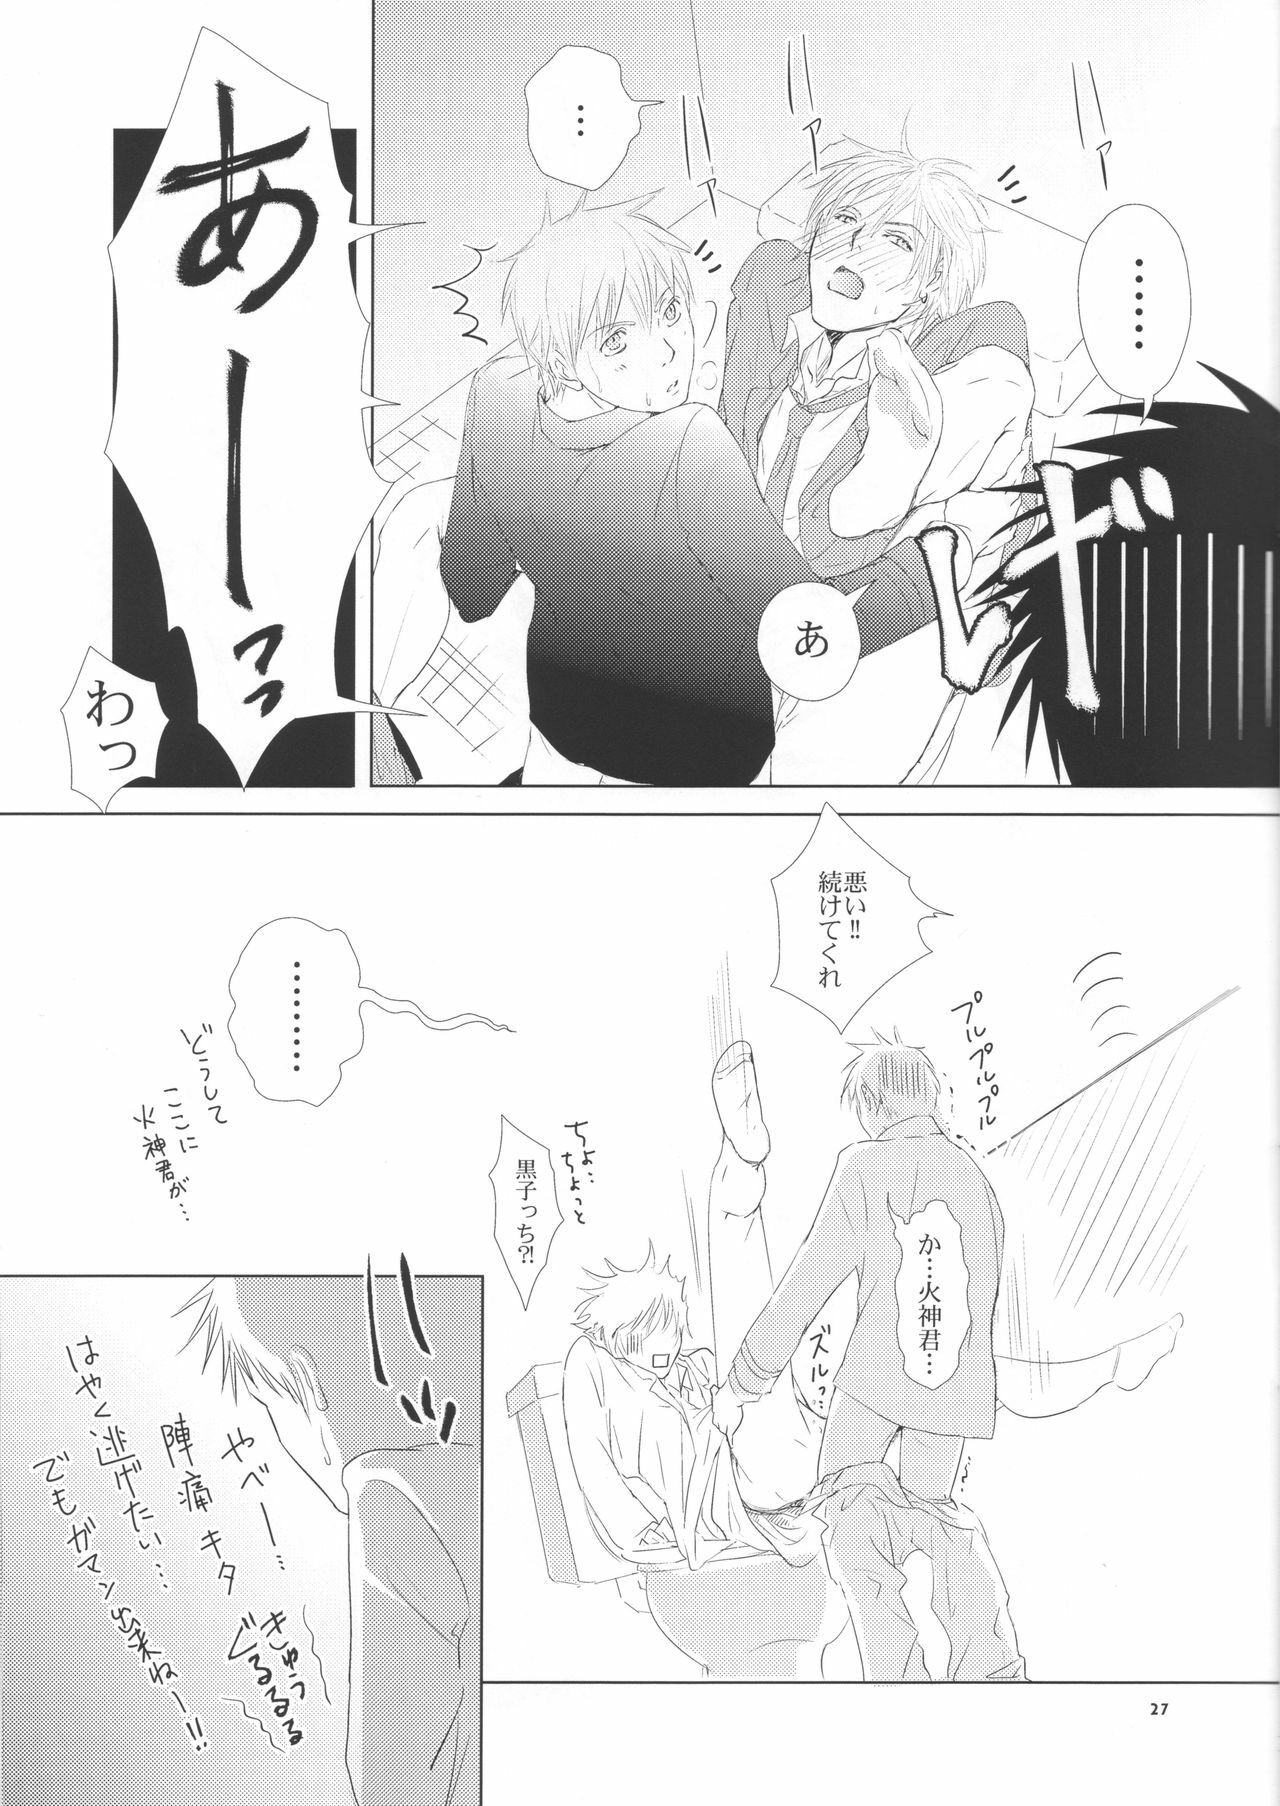 (Shadow Trickster 2) [ViViaN (JiN)] VIOLATION→FOULS (Kuroko no Basuke) page 27 full